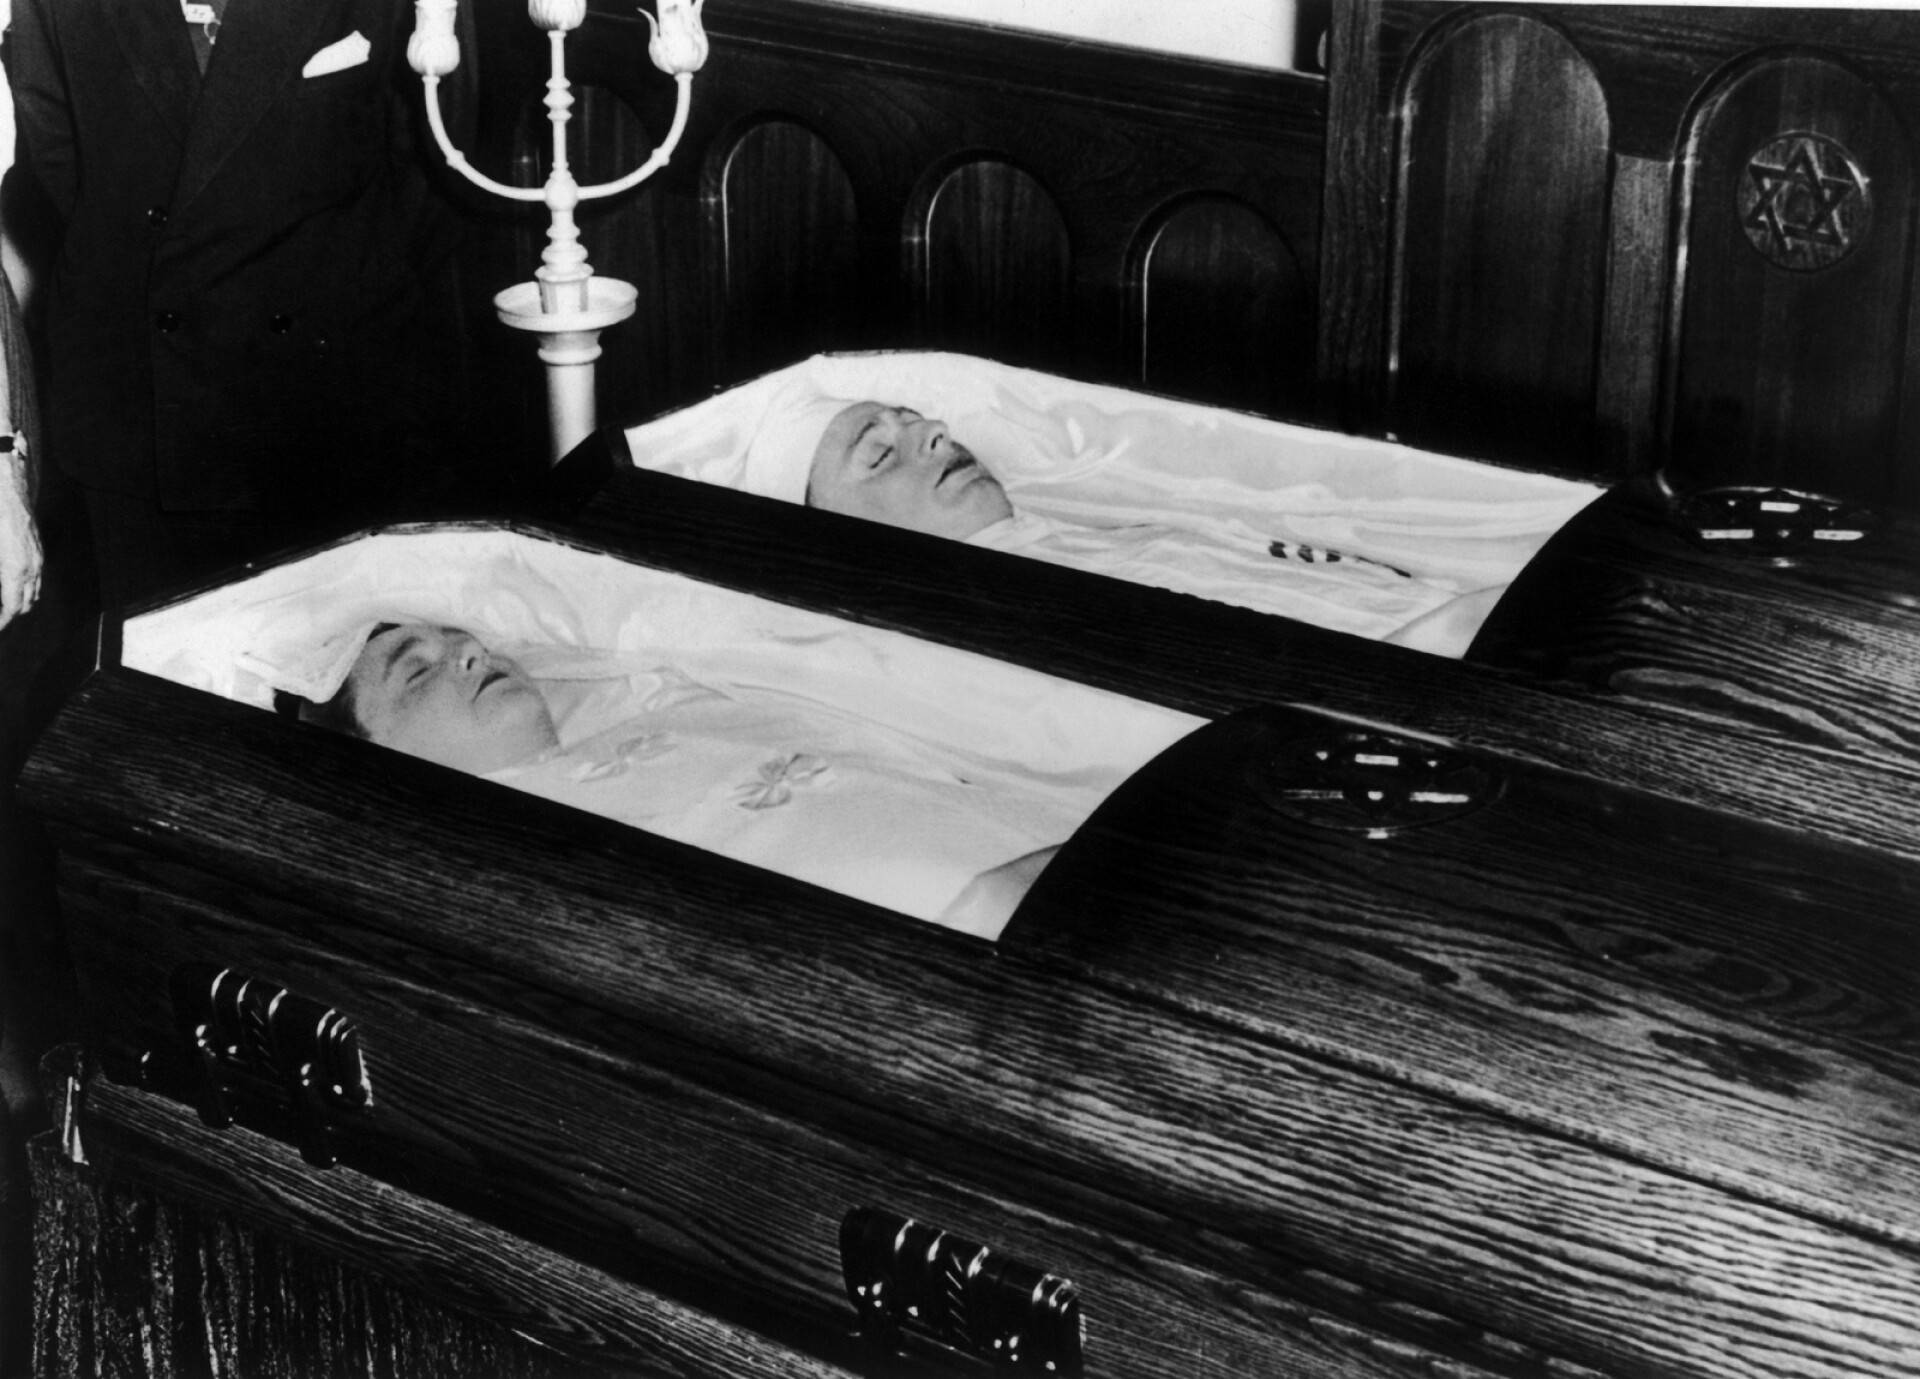 Rosenbergit arkuissaan julkisessa tilaisuudessa Brooklynin kappelissa ennen hautajaisia 24. heinäkuuta 1953. Ethel edessä, Julius takana. 